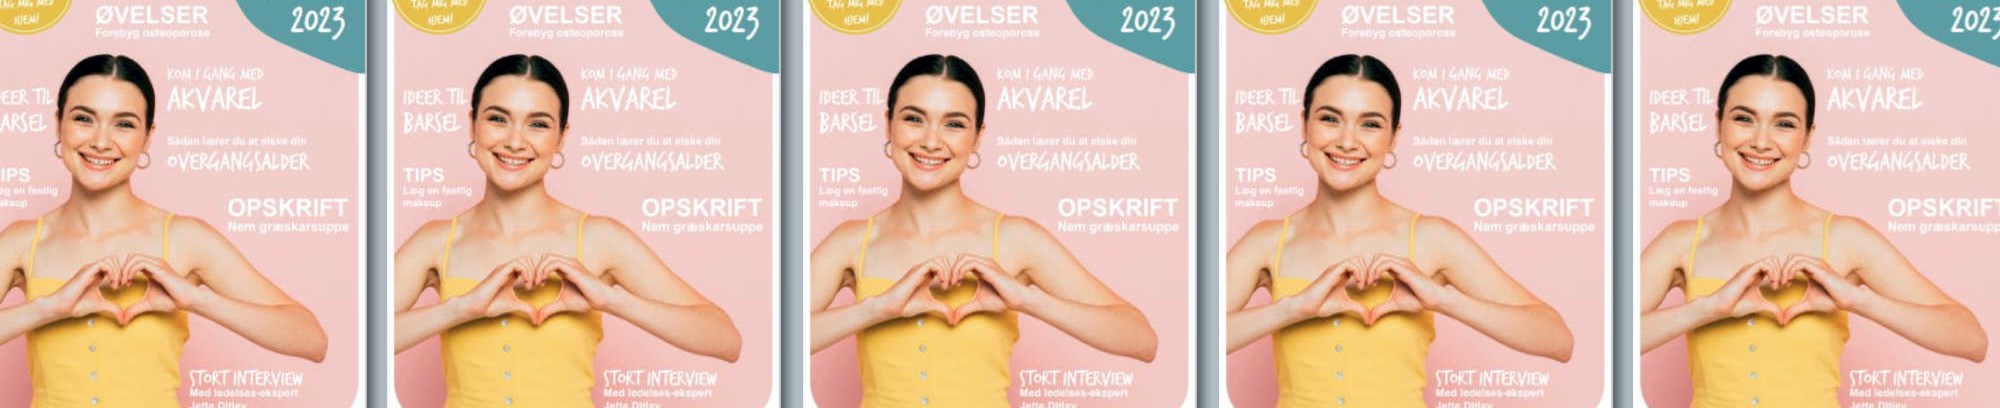 magasin fra FOF Sydøstjylland efterår 2023